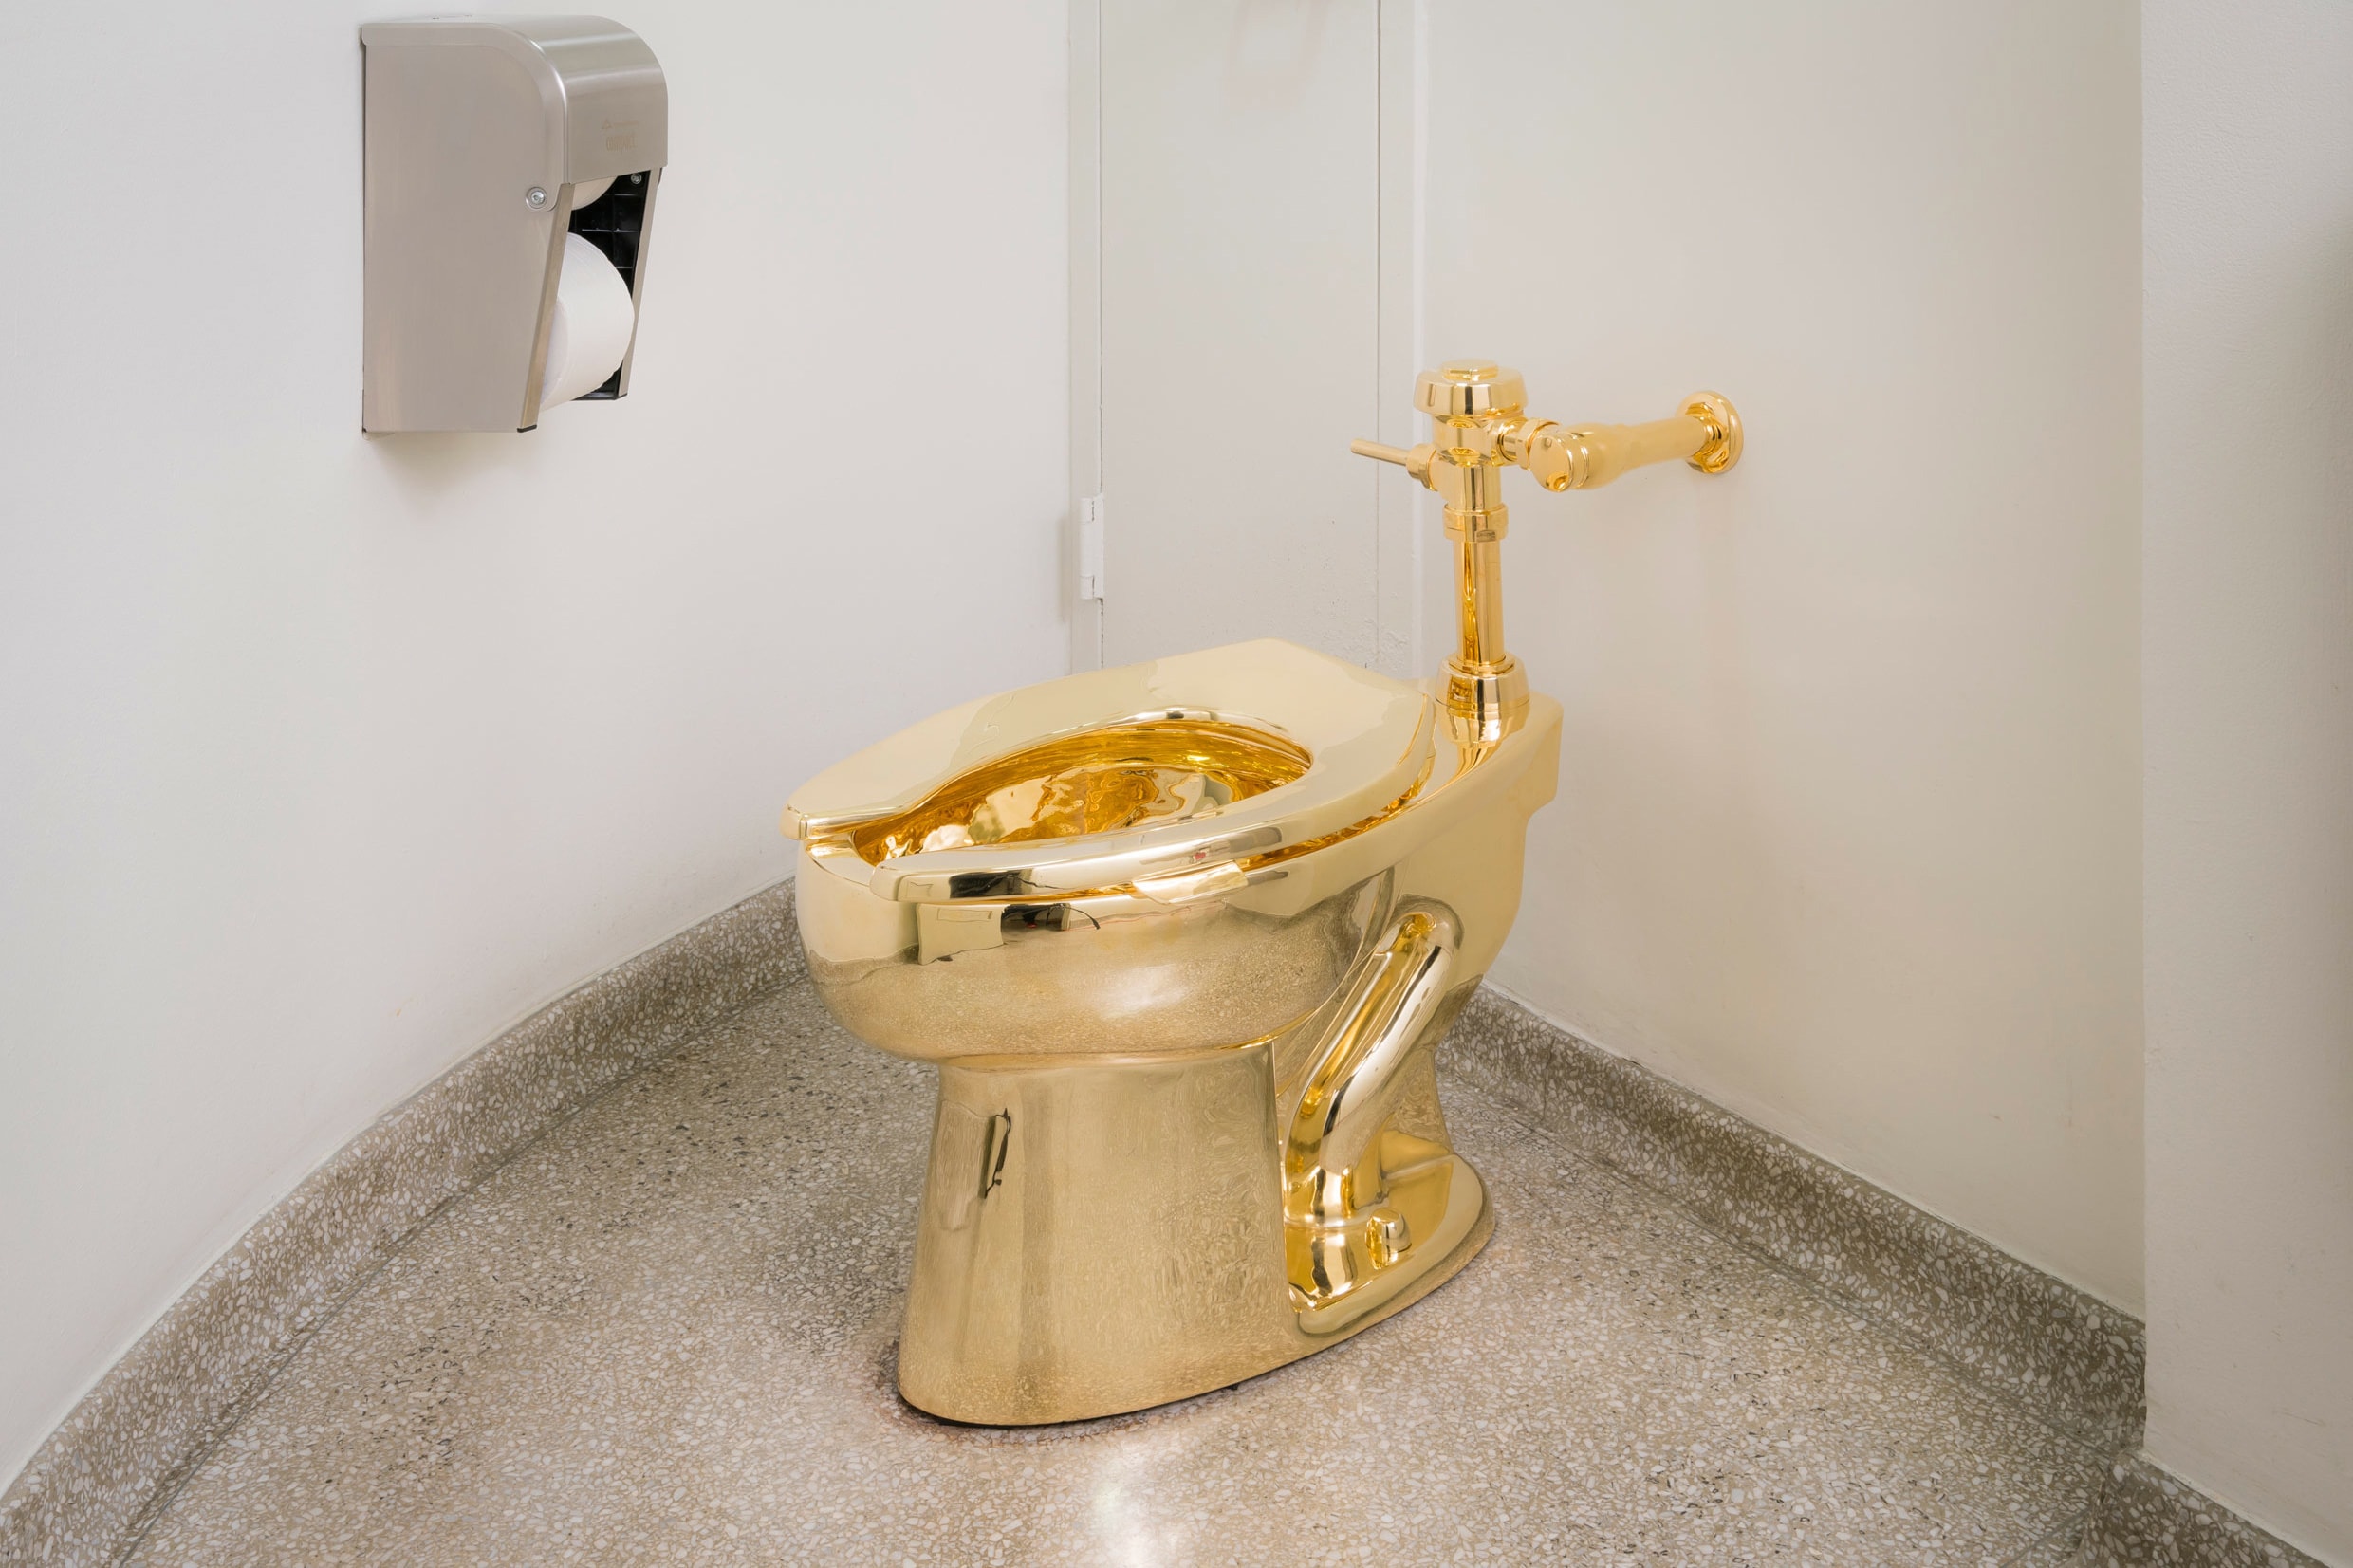 18K Gold Toilet America Maurizio Cattelan Guggenheim karat sculpture art exhibition